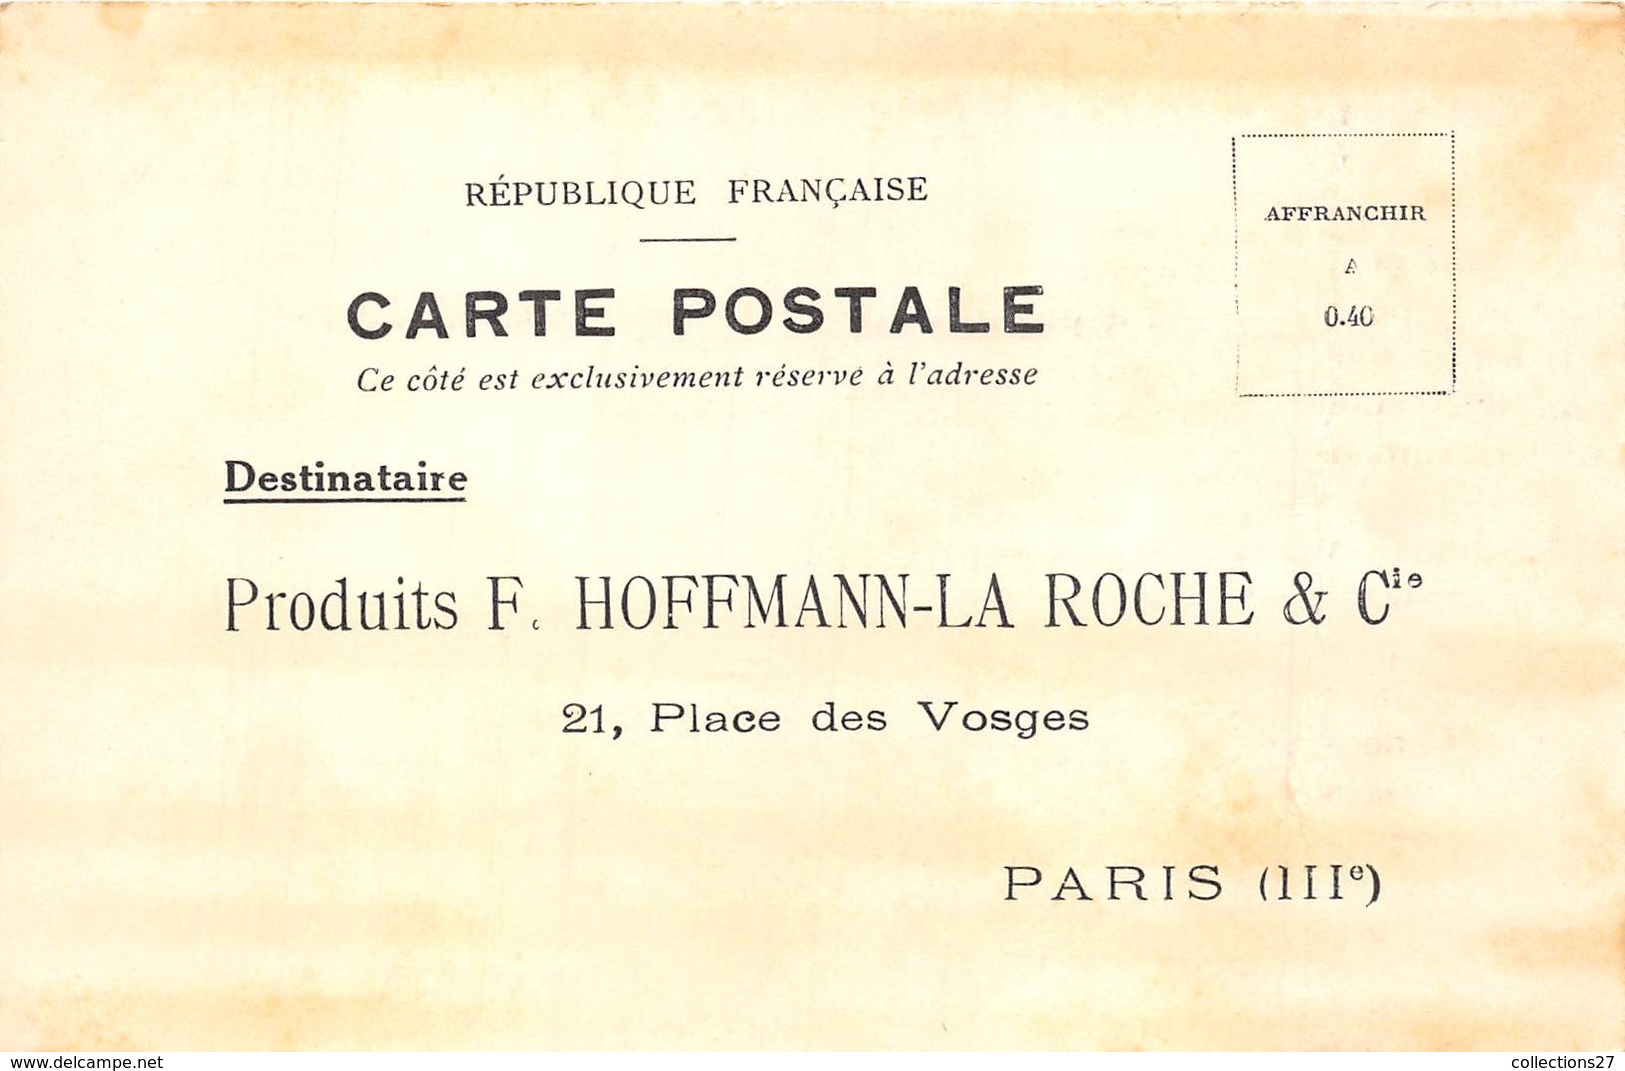 PARIS-75003- 21 PLACE DES VOSGES- PRODUITS F HOFFMANN-LA ROCHE ET Cie - Paris (03)